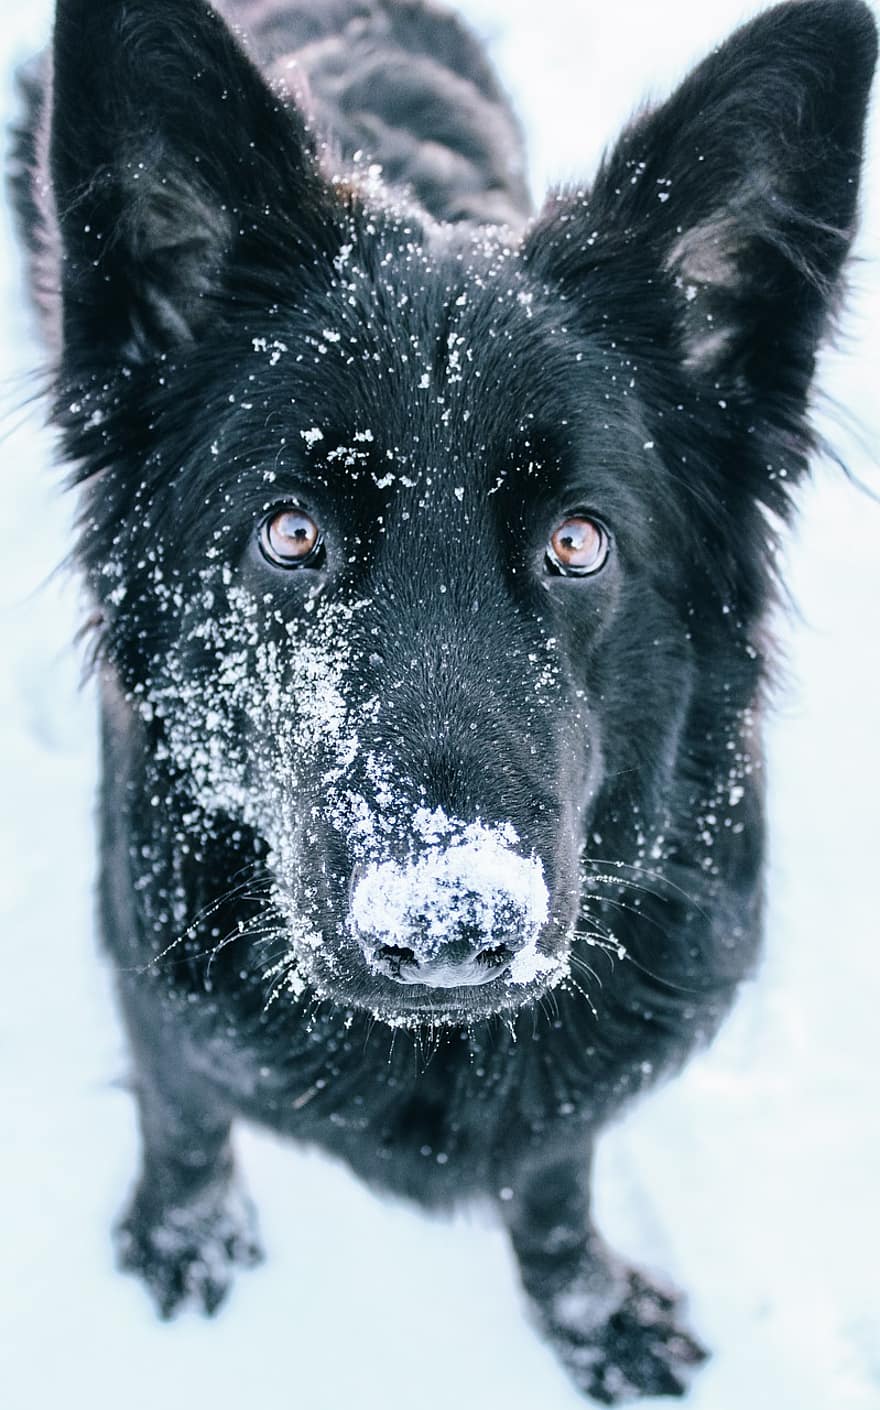 anjing, gembala, salju, embun beku, sangat dingin, musim dingin, salju yg turun, potret, dingin, potret anjing, anjing hitam